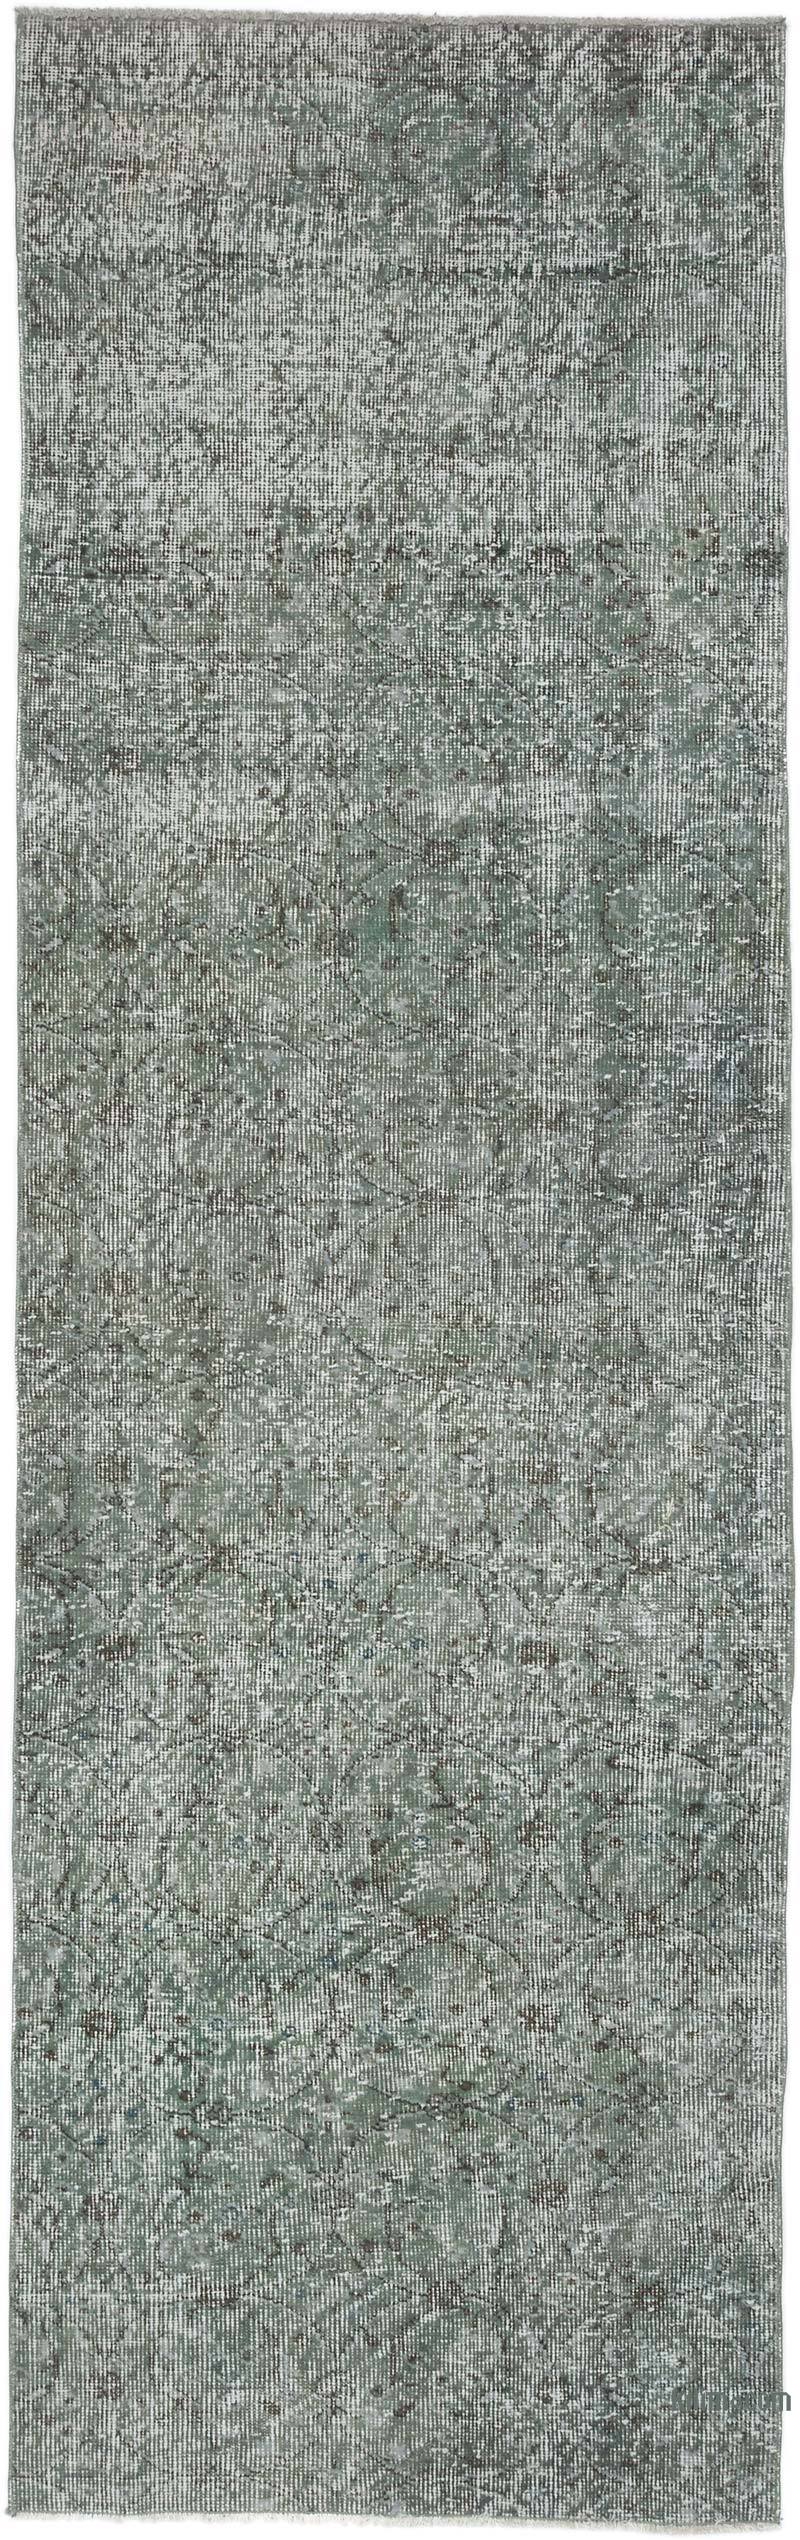 Gri Boyalı El Dokuma Vintage Halı Yolluk - 79 cm x 257 cm - K0052256